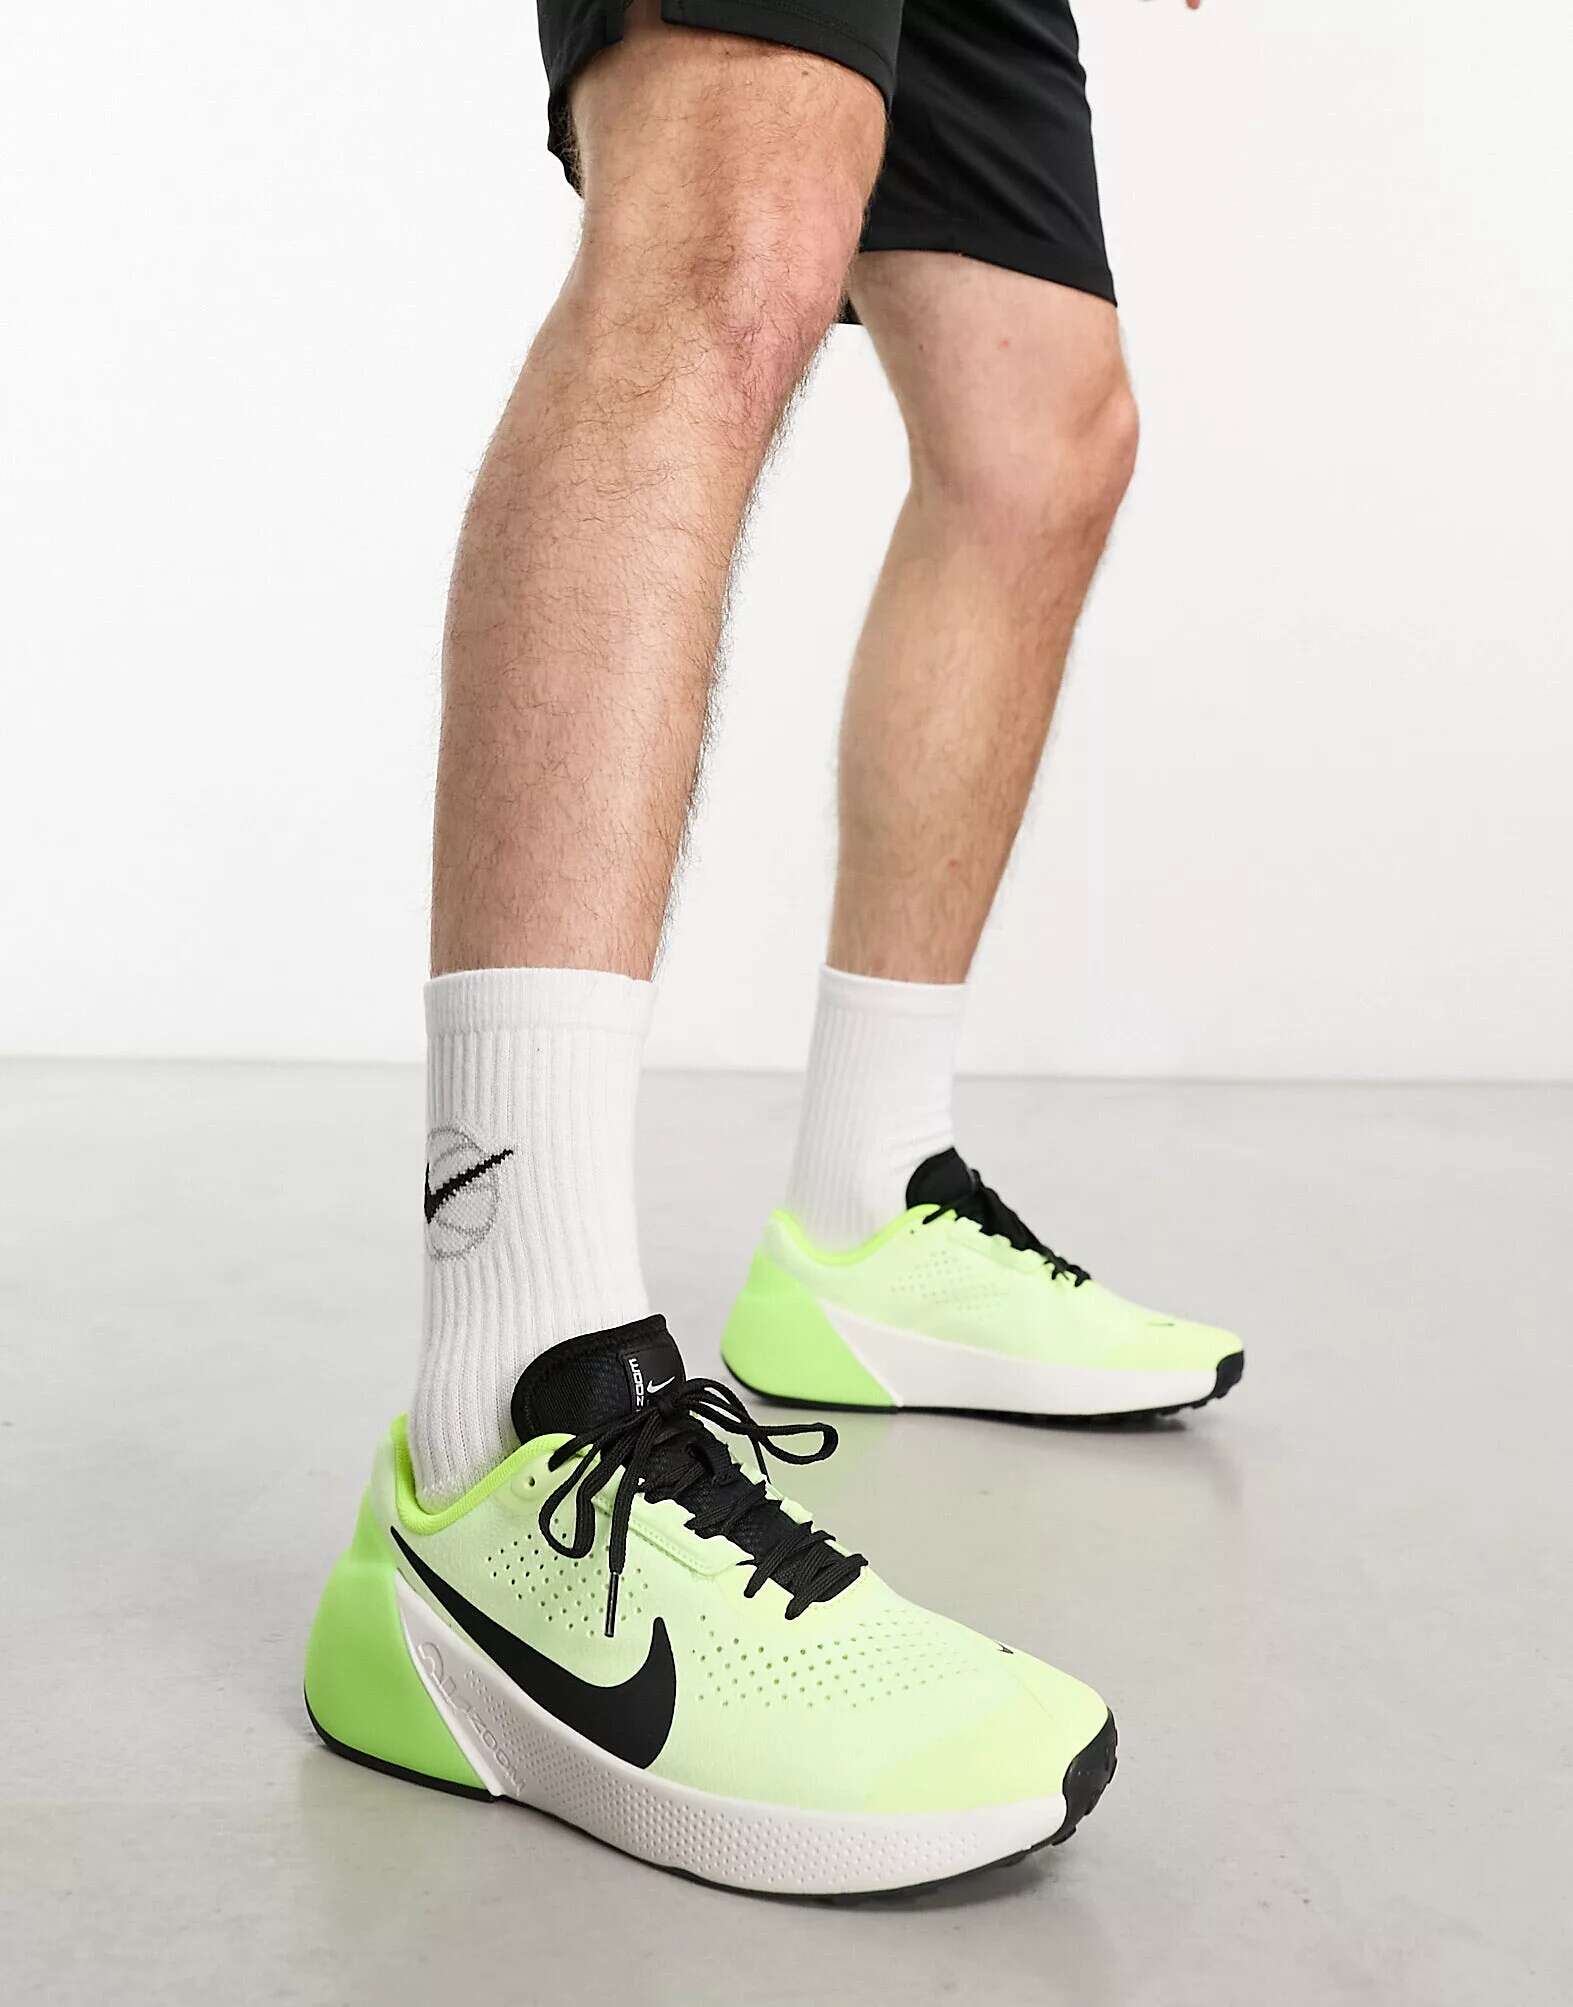 Кроссовки Nike Air Zoom TR 1 желтого и черного цветов